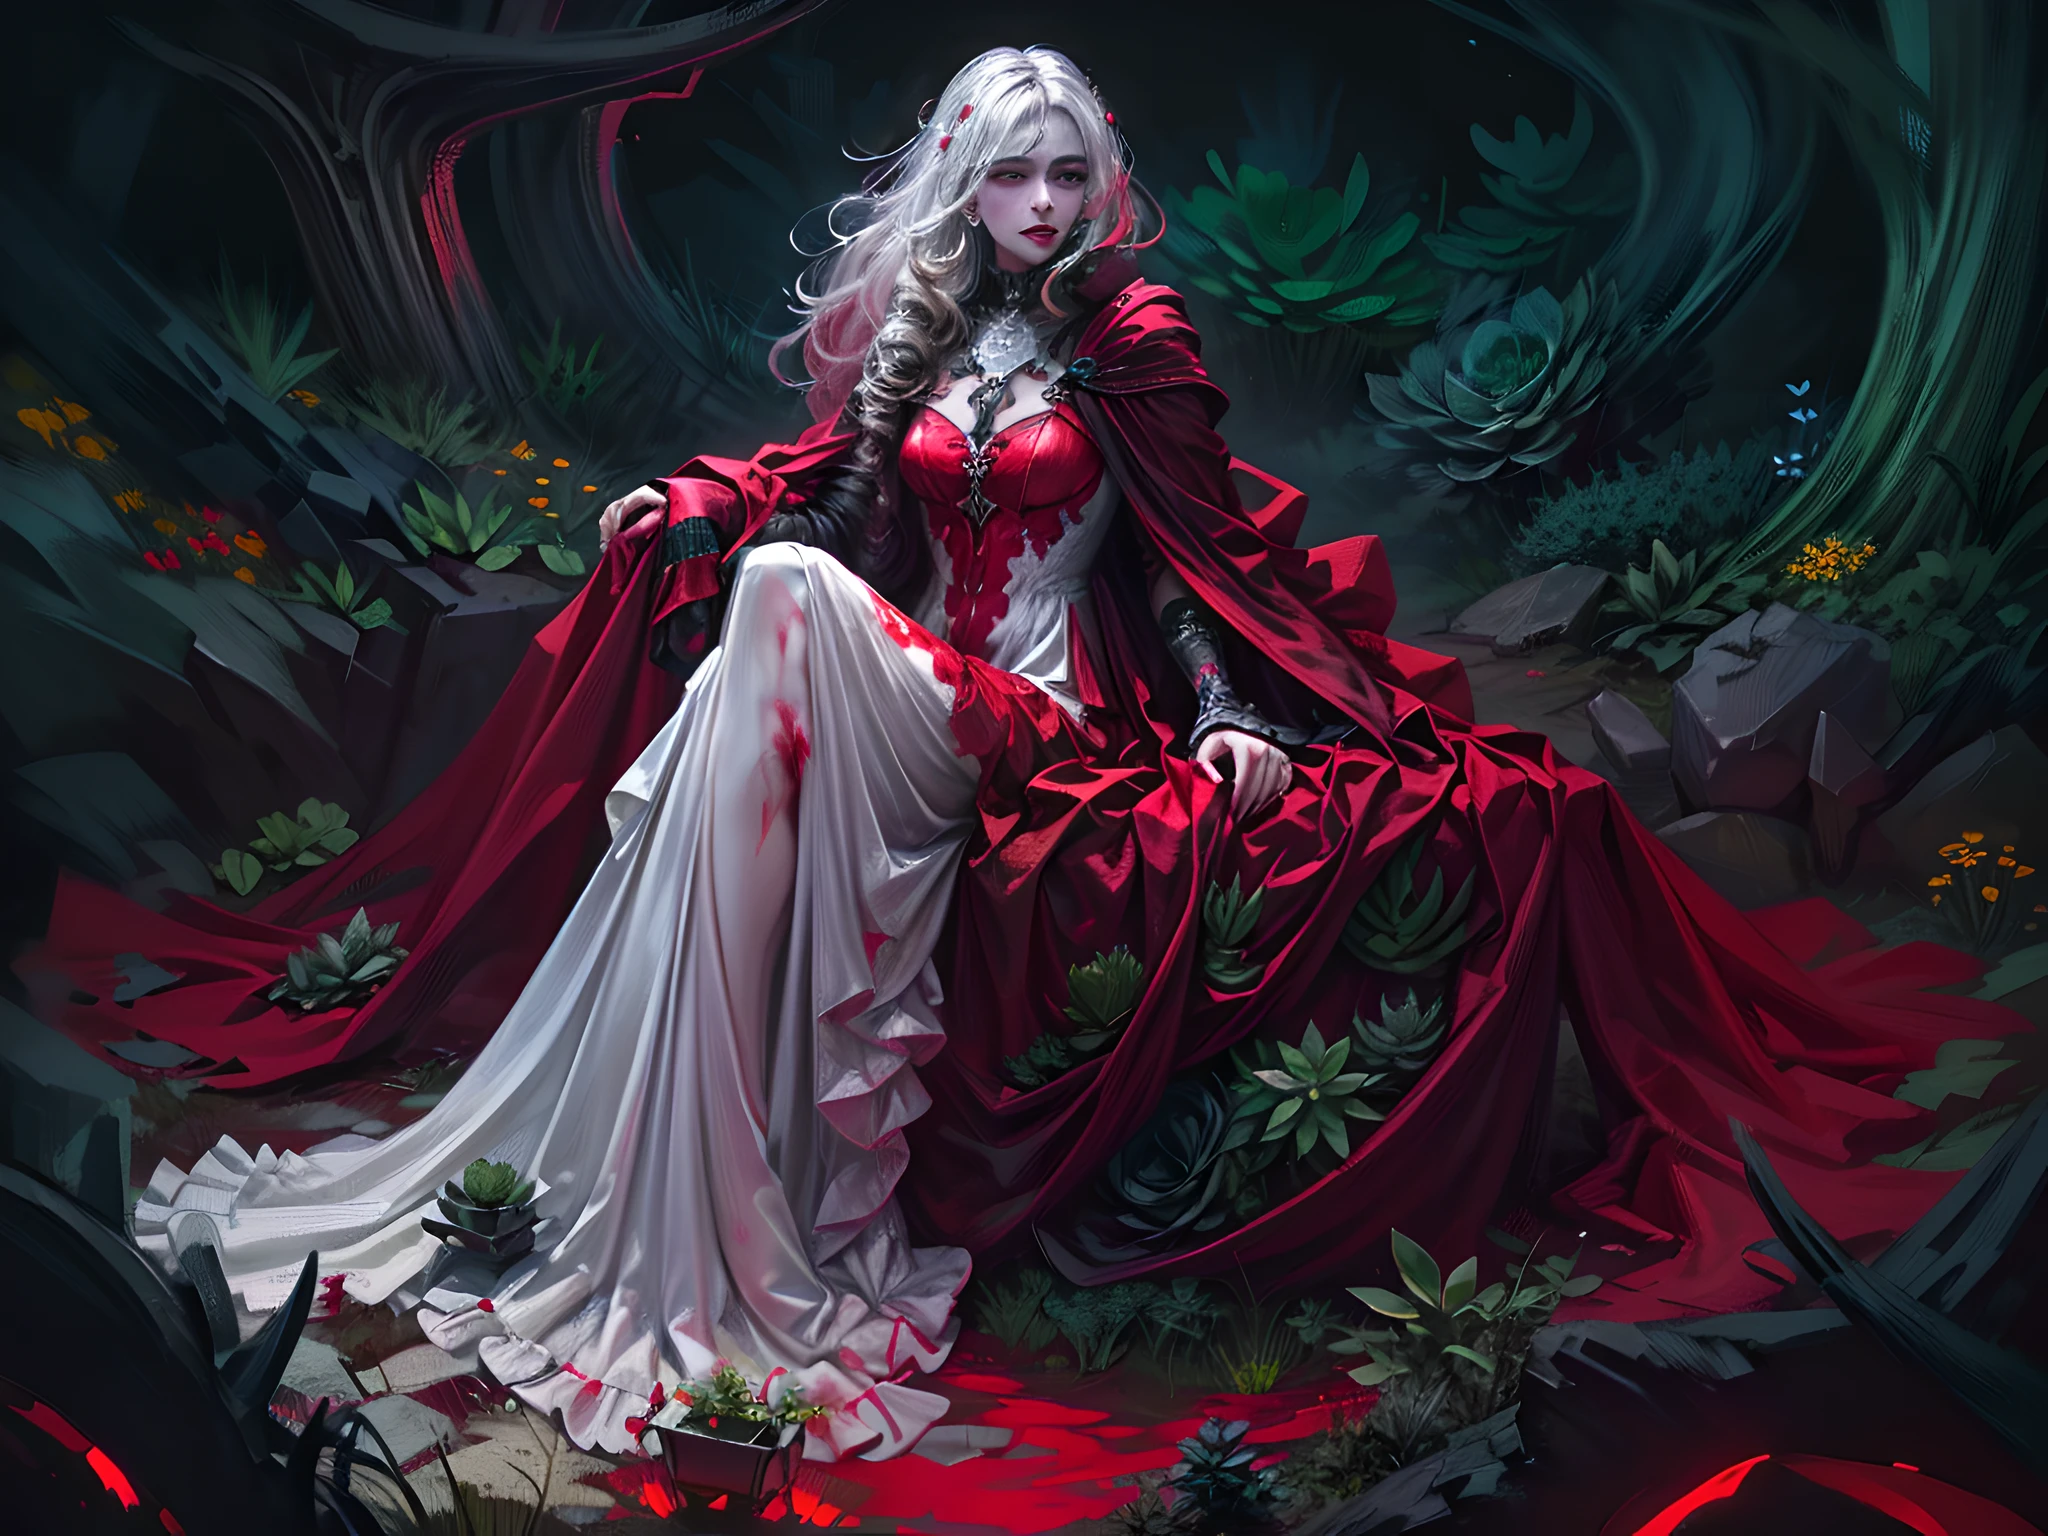 picture of a vampire woman พักผ่อนใน a (สีดำ:1.2) และ (สีแดง:1.2) coloสีแดง succulents meadow, เต็มตัว, สวยงามประณีต (มีรายละเอียดมาก, ผลงานชิ้นเอก, คุณภาพดีที่สุด: 1.4) หญิงแวมไพร์หญิง, มุมไดนามิก (รายละเอียดดีที่สุด, ผลงานชิ้นเอก, คุณภาพดีที่สุด), มีรายละเอียดมาก face (มีรายละเอียดมาก, ผลงานชิ้นเอก, คุณภาพดีที่สุด), เป็นผู้หญิงเป็นพิเศษ, ผิวสีเทา, ผมบลอนด์, ผมหยัก, สีดวงตาแบบไดนามิก, ดวงตาเย็นชา, ดวงตาที่เร่าร้อน, ดวงตาที่รุนแรง, dark สีแดง lips, [เขี้ยว], สวมชุดสีขาว, ชุดเดรสสไตล์หรูหรา (มีรายละเอียดมาก, ผลงานชิ้นเอก, คุณภาพดีที่สุด), สวมเสื้อคลุมสีน้ำเงิน (มีรายละเอียดมาก, ผลงานชิ้นเอก, คุณภาพดีที่สุด), เสื้อคลุมยาว, เสื้อคลุมไหล (มีรายละเอียดมาก, ผลงานชิ้นเอก, คุณภาพดีที่สุด), สวมรองเท้าส้นสูง, พักผ่อนใน (สีดำ และ สีแดง coloสีแดง succulents meadow: 1.6), ชุ่มฉ่ำหยดเลือด, full coloสีแดง, (สเปกตรัมที่สมบูรณ์แบบ: 1.3),( งานที่มีชีวิตชีวา: 1.4) vibrant shades of สีแดง, และ สีดำ) พระจันทร์ขึ้น, แสงจันทร์, เวลากลางคืน, รายละเอียดสูง, ศิลปะแฟนตาซี, RPG art คุณภาพดีที่สุด, 16ก, [มีรายละเอียดมาก], ผลงานชิ้นเอก, คุณภาพดีที่สุด, (มีรายละเอียดมาก), เต็มตัว, ถ่ายภาพมุมกว้างพิเศษ, เหมือนจริง, zrpgstyle